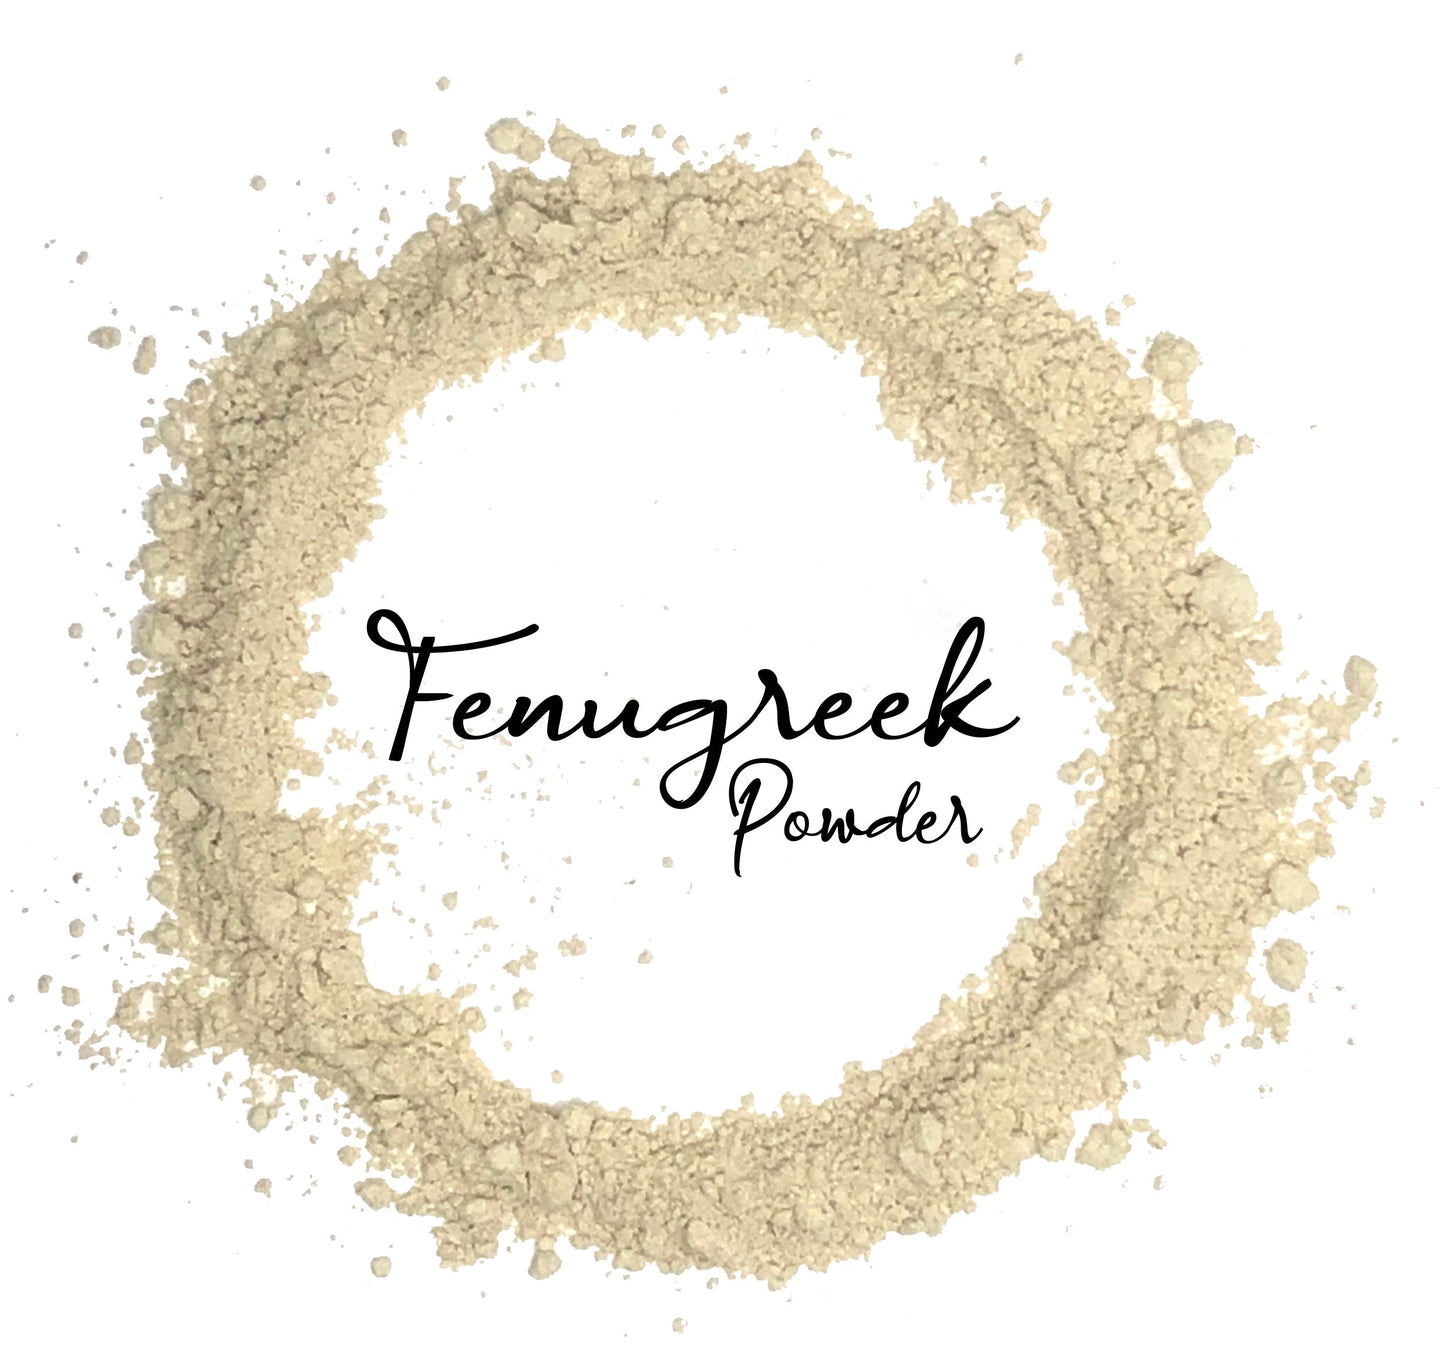 Wholesale Spices & Herbs - Fenugreek Seed Powder, Organic 8oz(227g) Bag